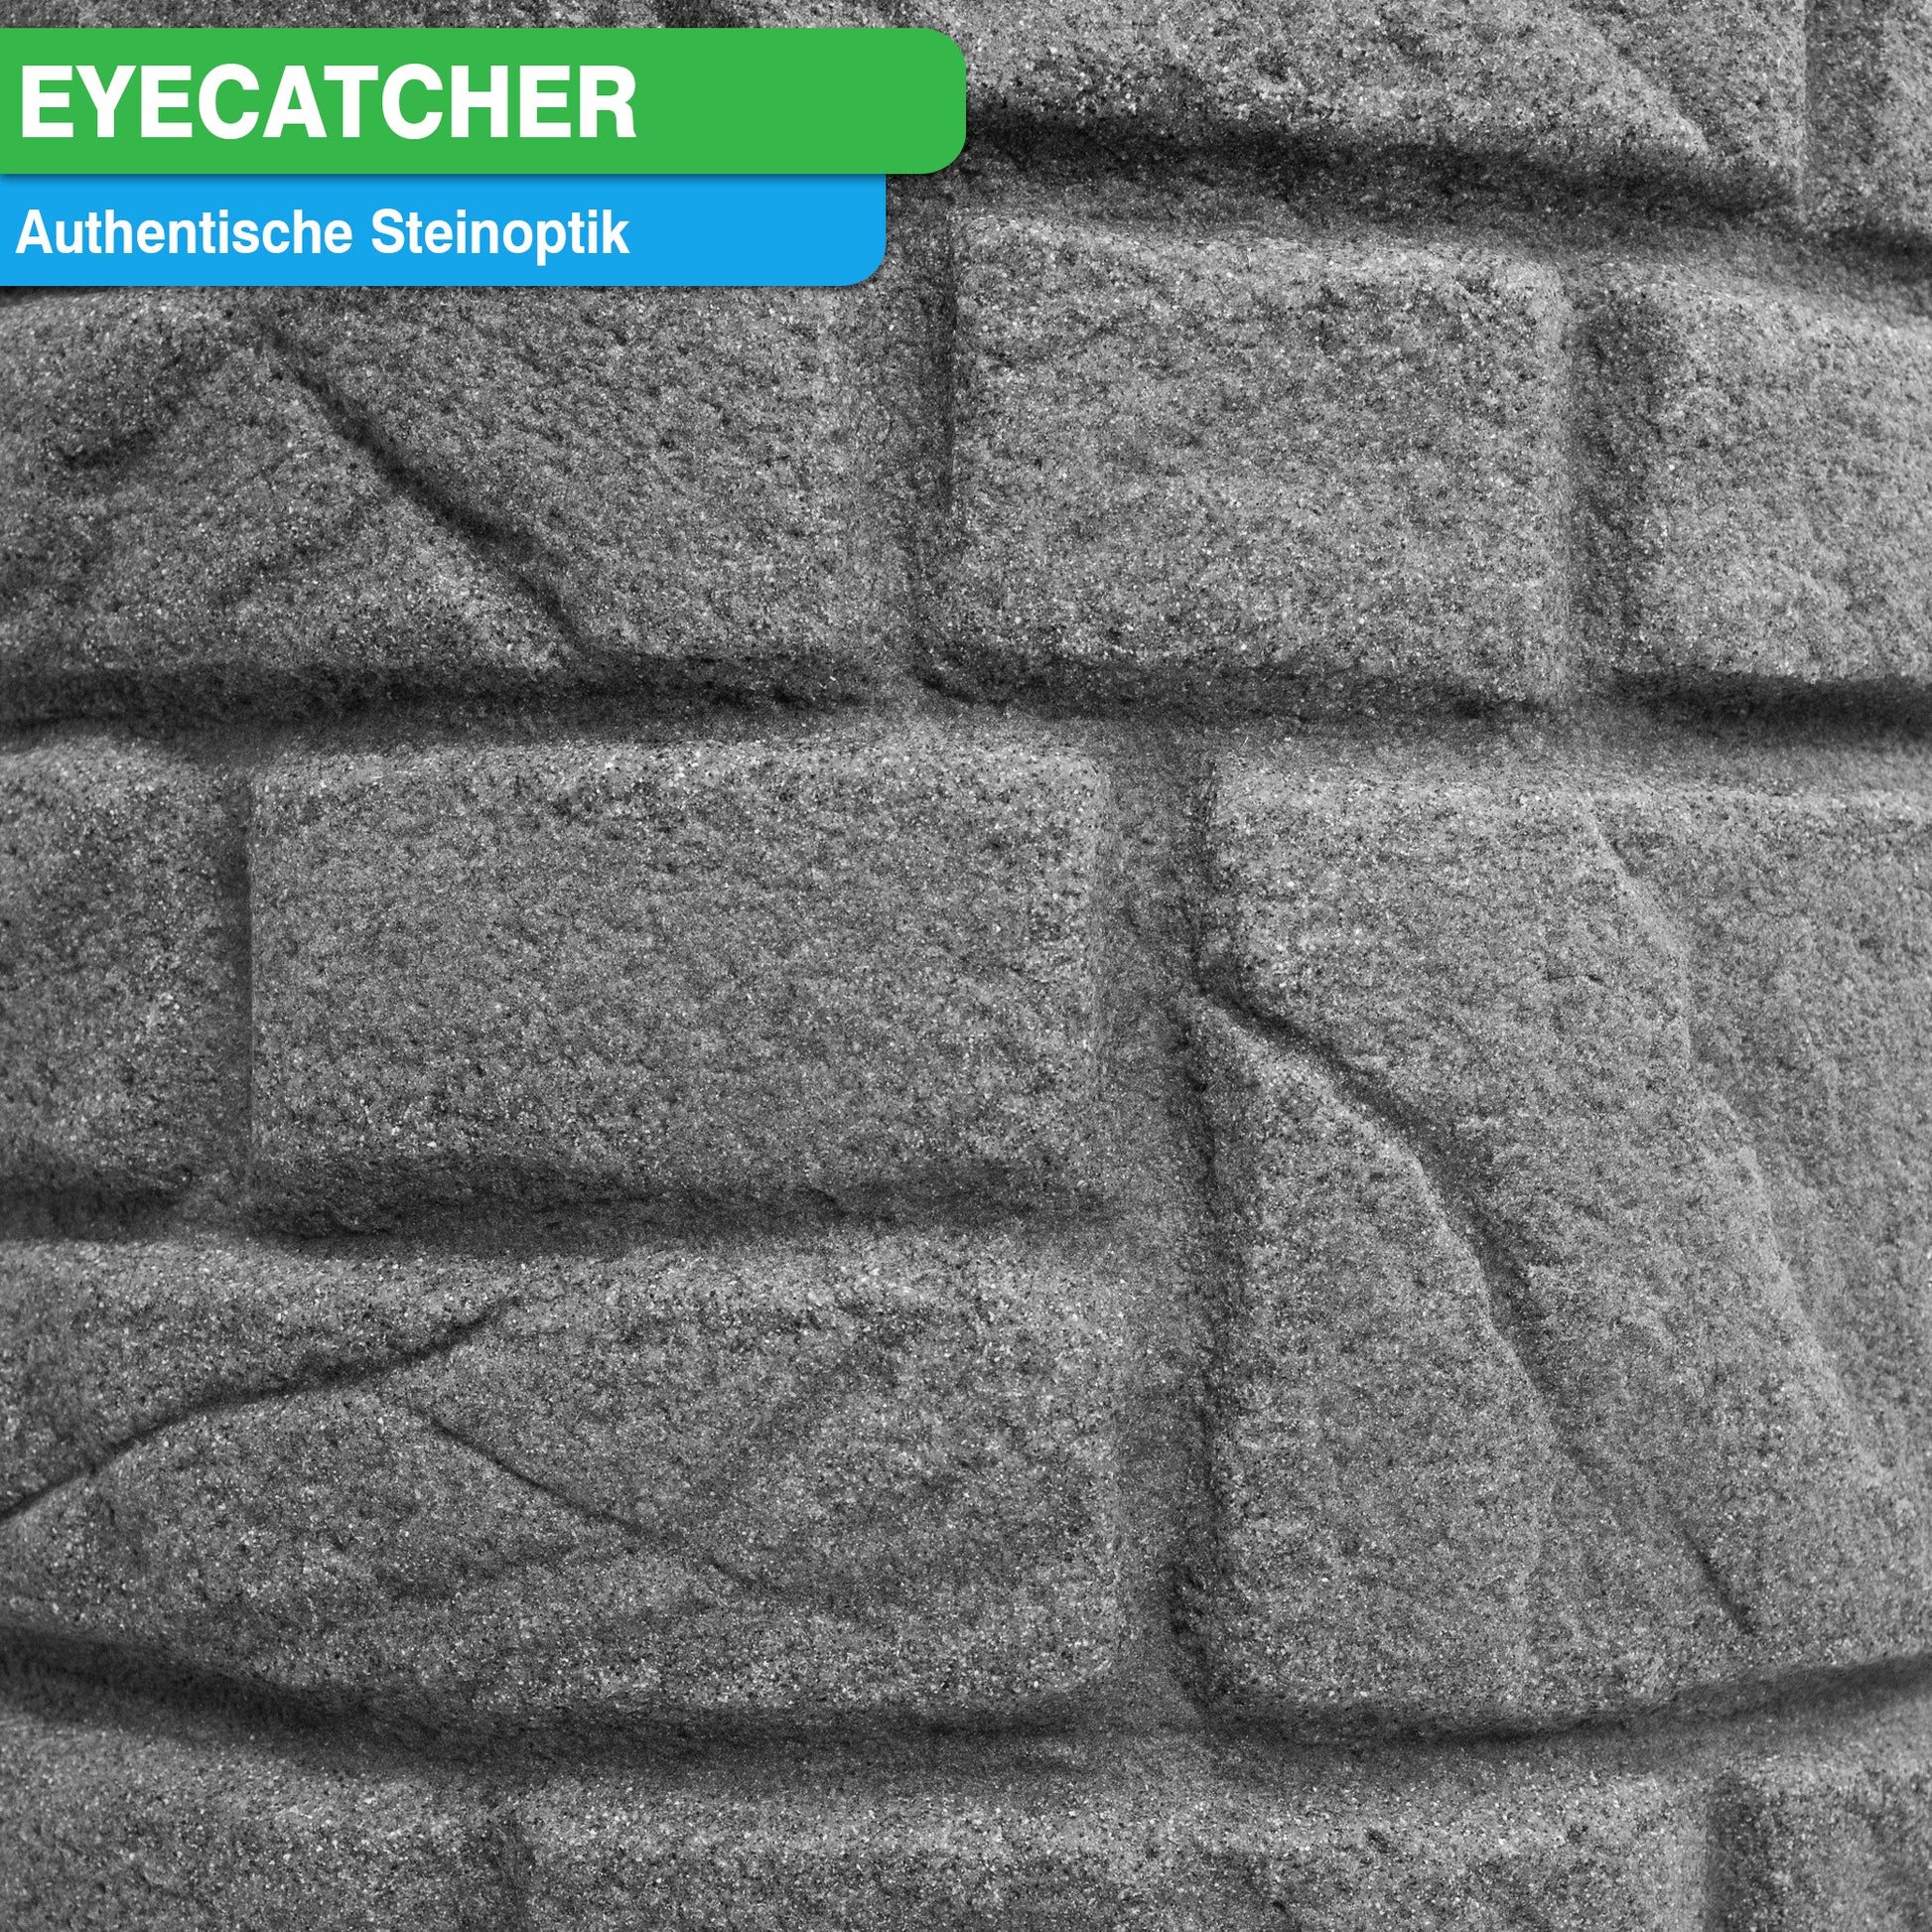 Grau strukturierte Wand in Steinmusterung mit Aufschrift „Eyecatcher, authentische Steinbrunnen-Optik“, was darauf schließen lässt, dass es sich um ein besonderes Produkt der YourCasa Regentonne [StoneRain] mit authentischer Steinbrunnen-Optik von yourcasa-de handelt.